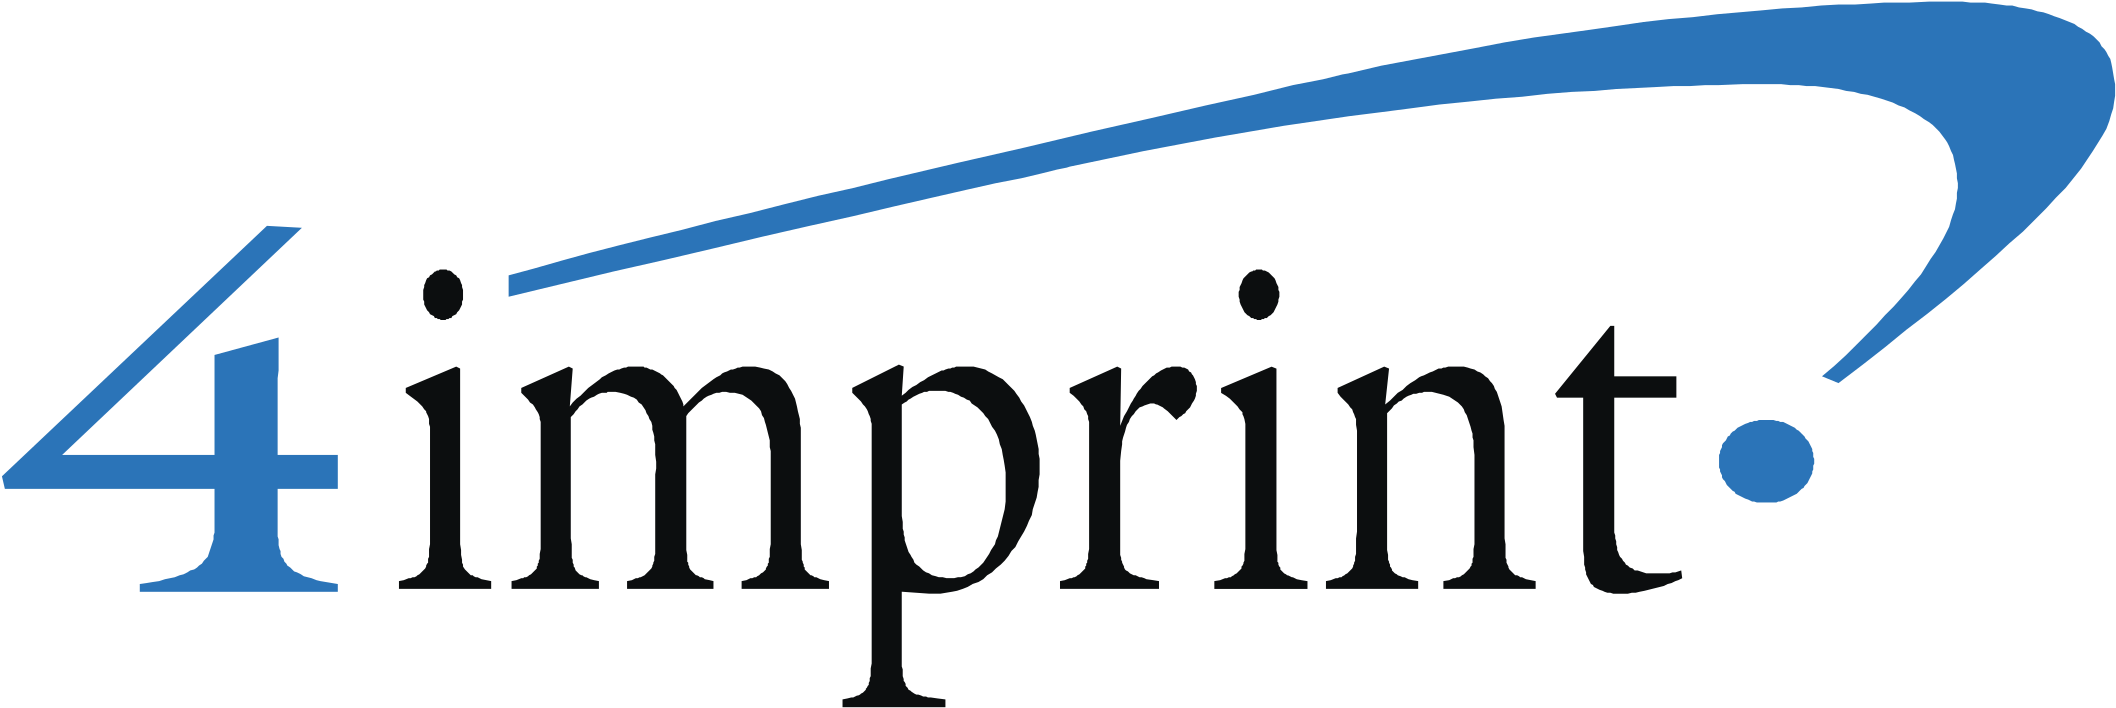 Imprint Logo Png - 4imprint Logo Clipart (2400x2400), Png Download